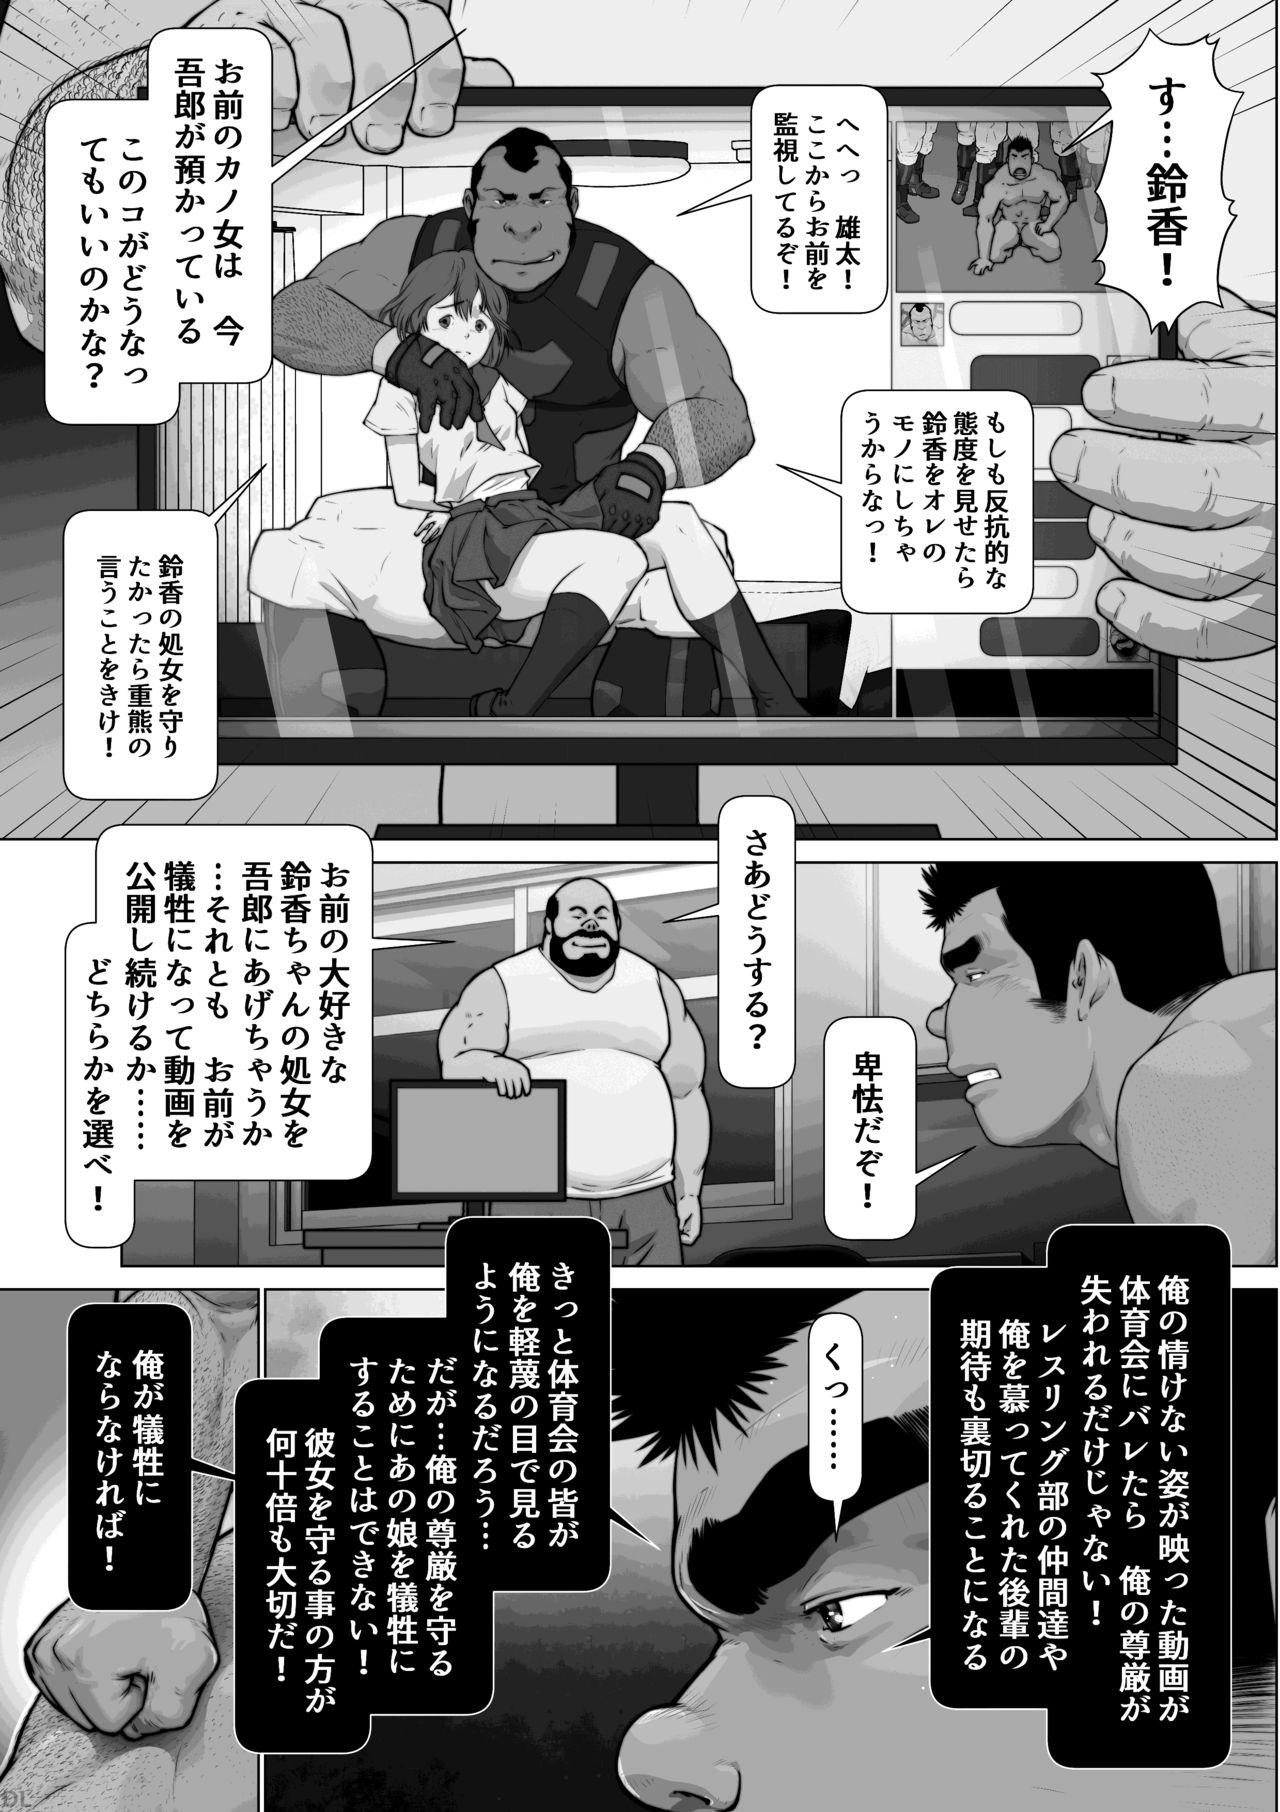 [frontierkiss (Kai Makoto)] Nanji no Teki o Aise Kouhen: Osuinu Dorei Shiiku Monogatari Dai 2-shou 2-wa (22b) [Digital] 18